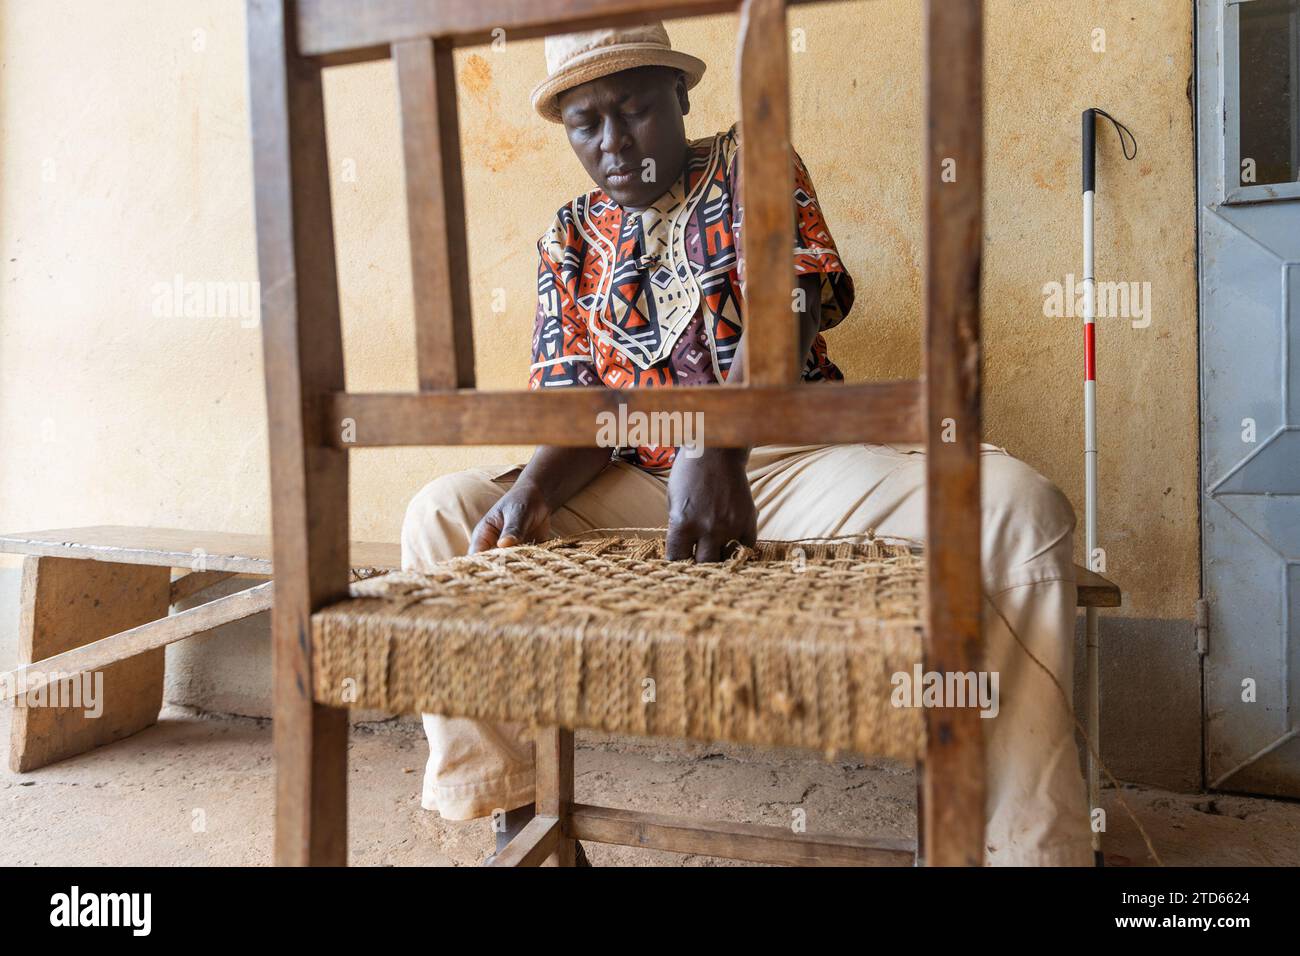 Gros plan travail de tissage d'une chaise en bois par un homme africain aveugle avec chapeau sur la tête. Banque D'Images